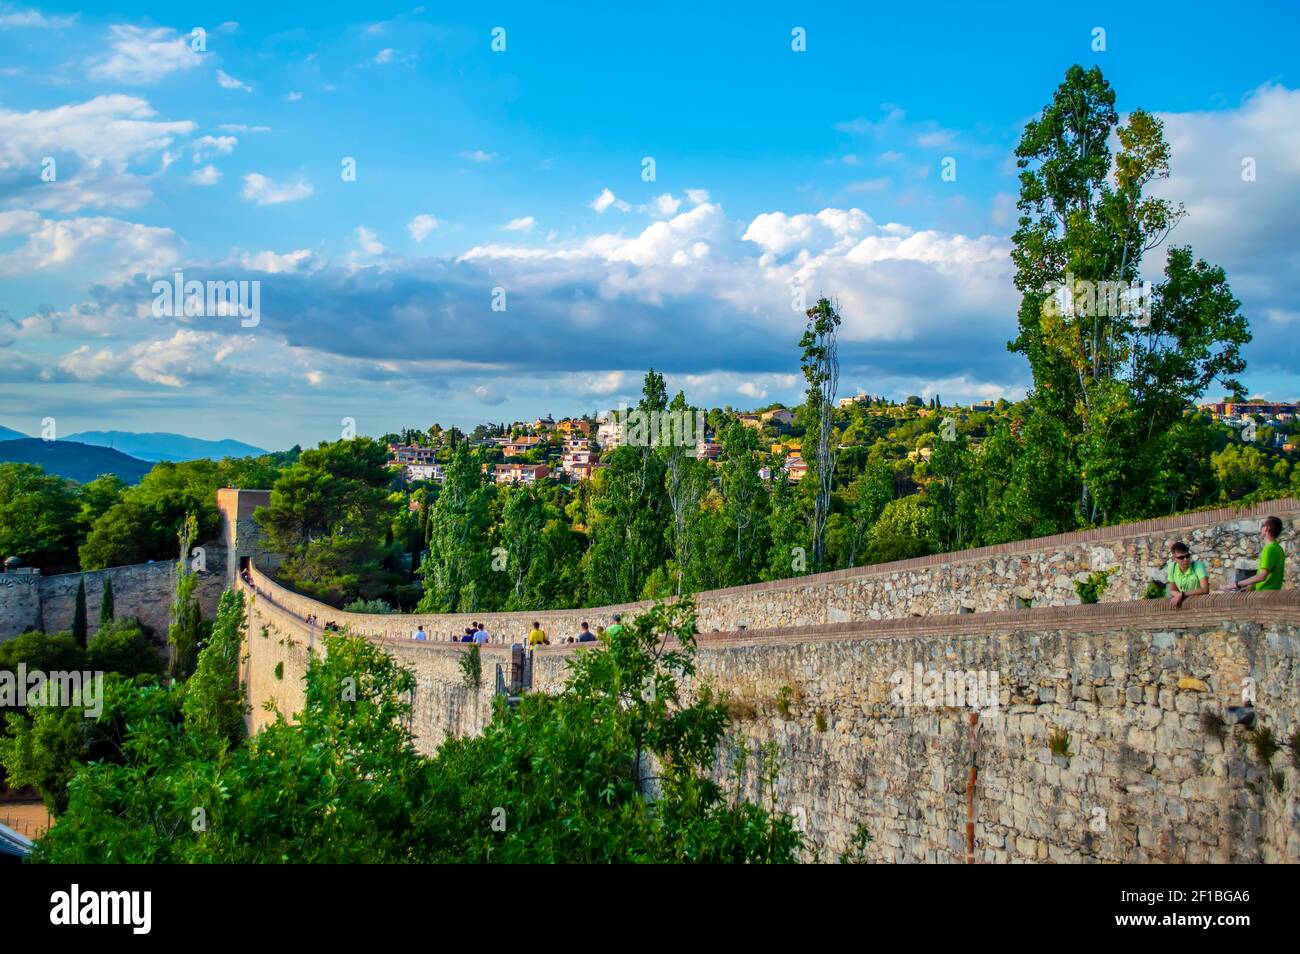 Girona, Spanien - 28. Juli 2019: Blick auf die historischen Befestigungsmauern der Stadt Girona in Katalonien, Spanien Stockfoto